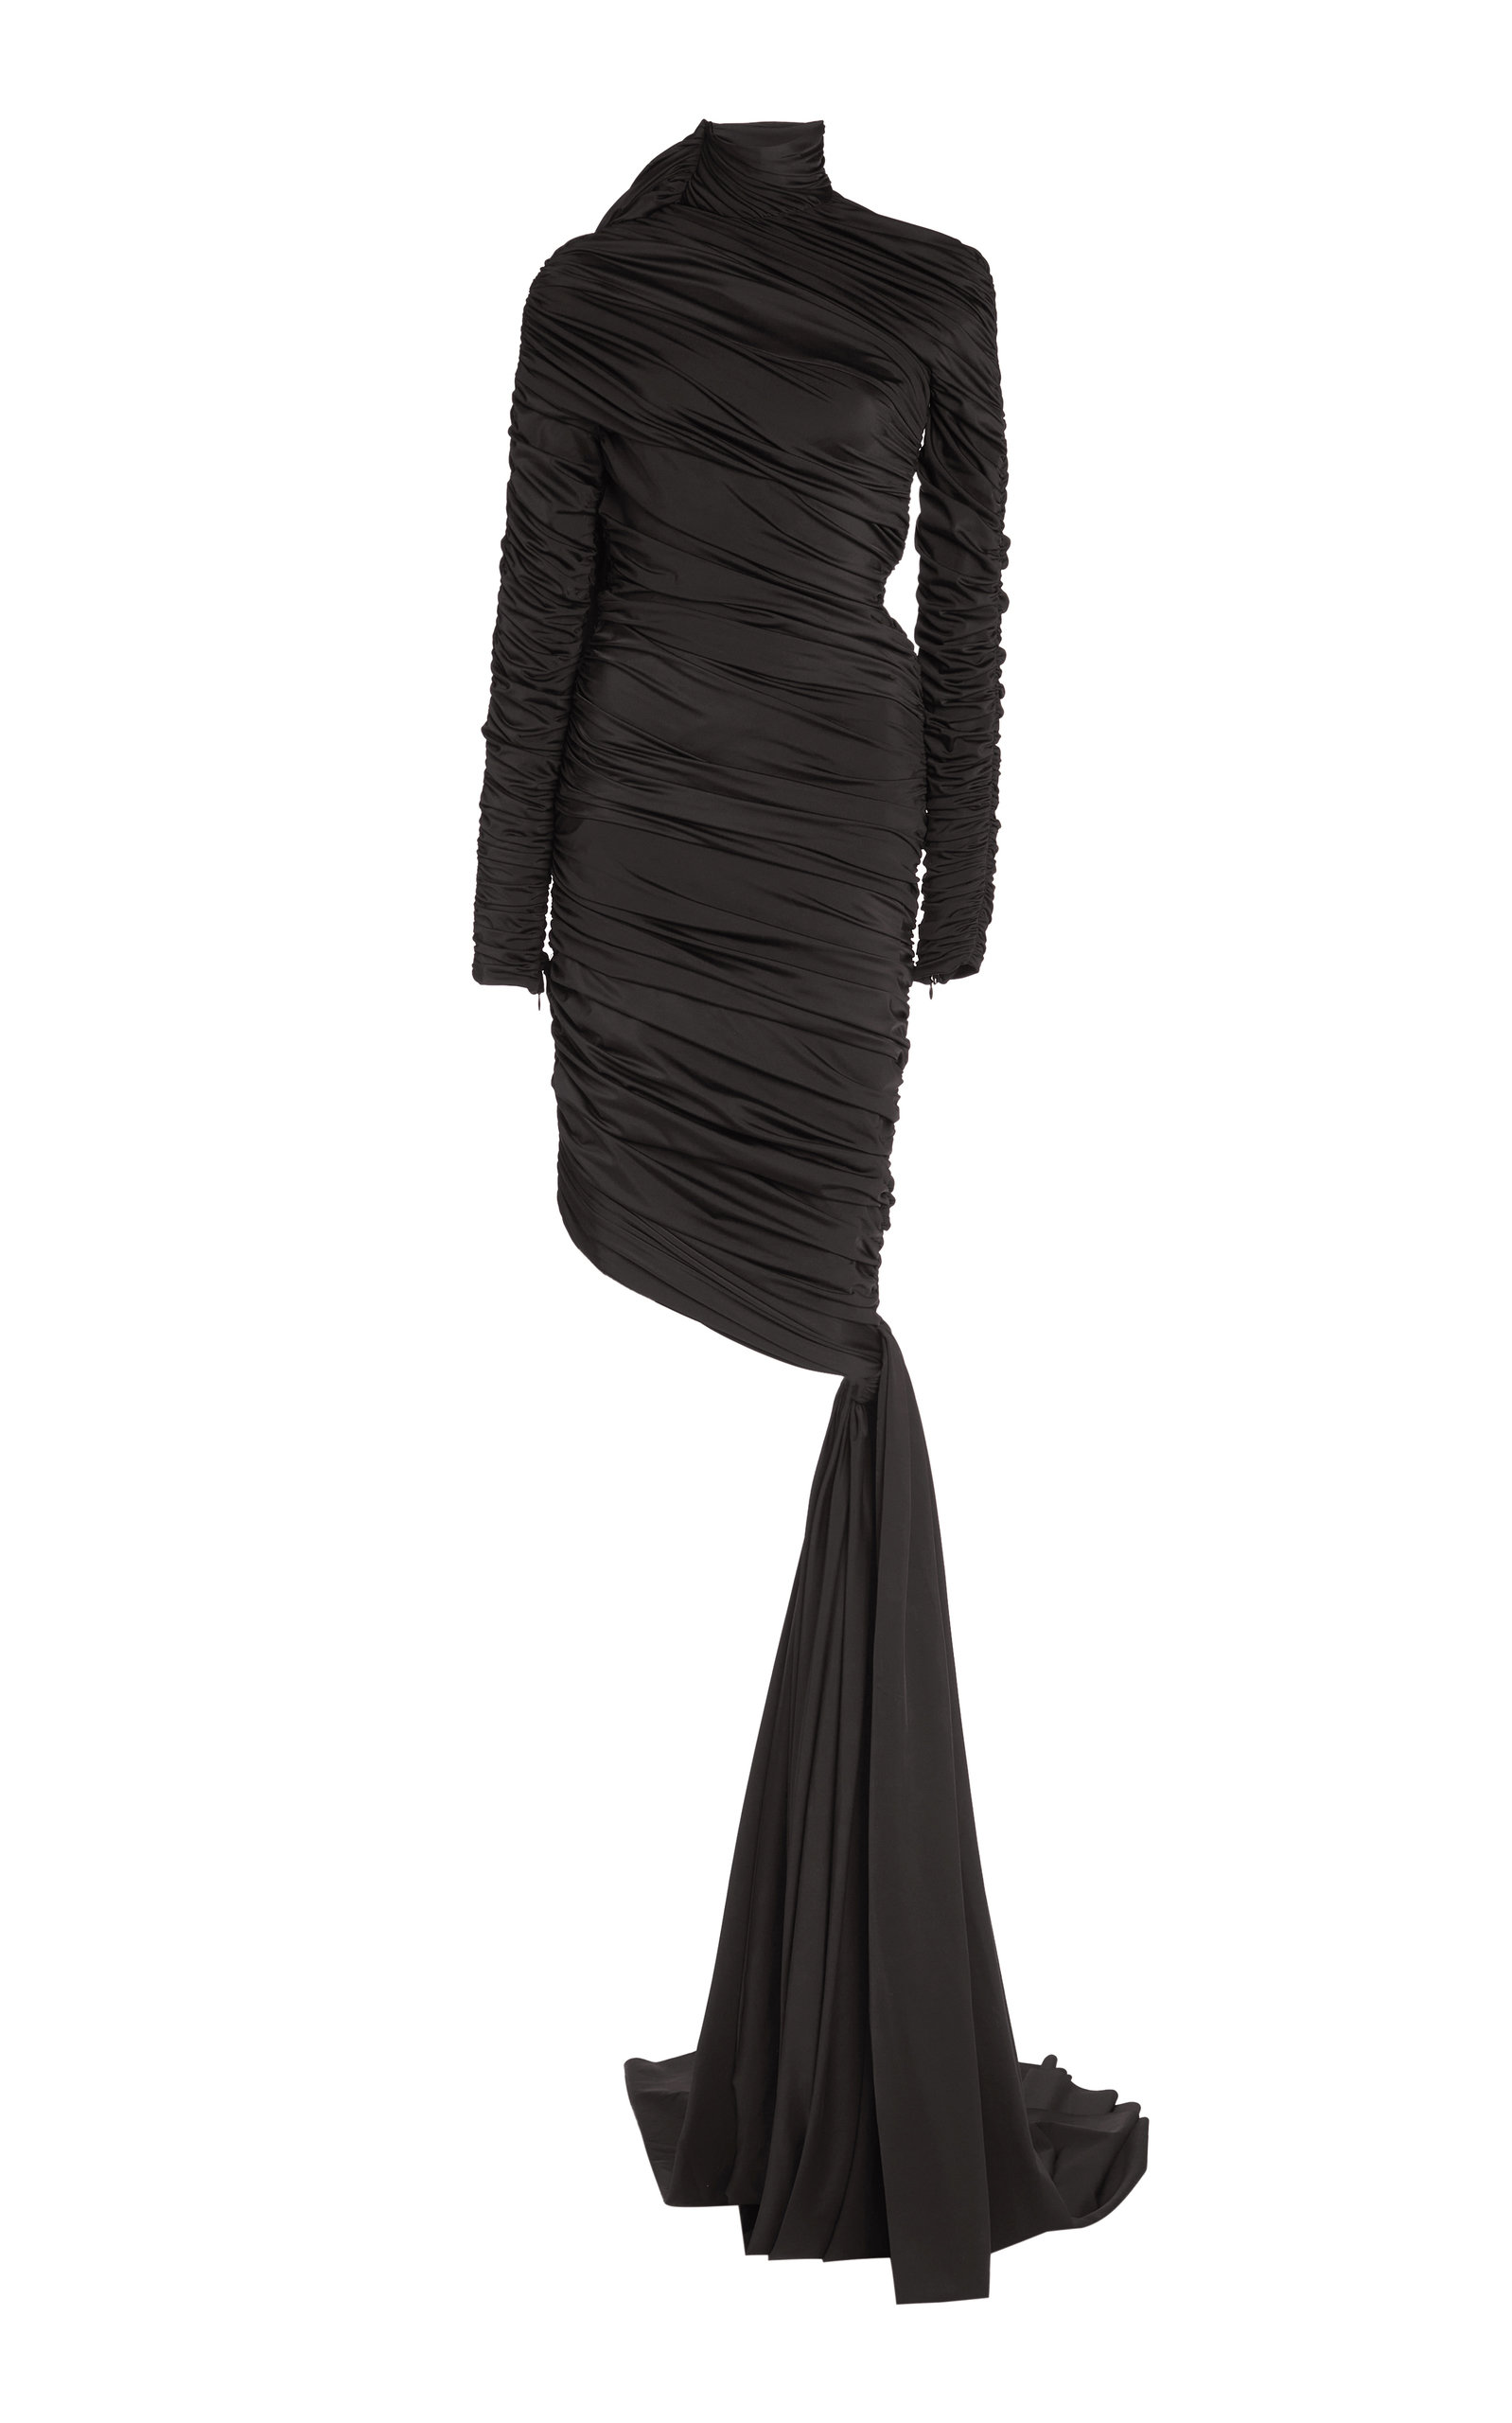 Balenciaga - Women's Knotted and Ruched Jersey Midi Dress - Black - FR 34 - Moda Operandi